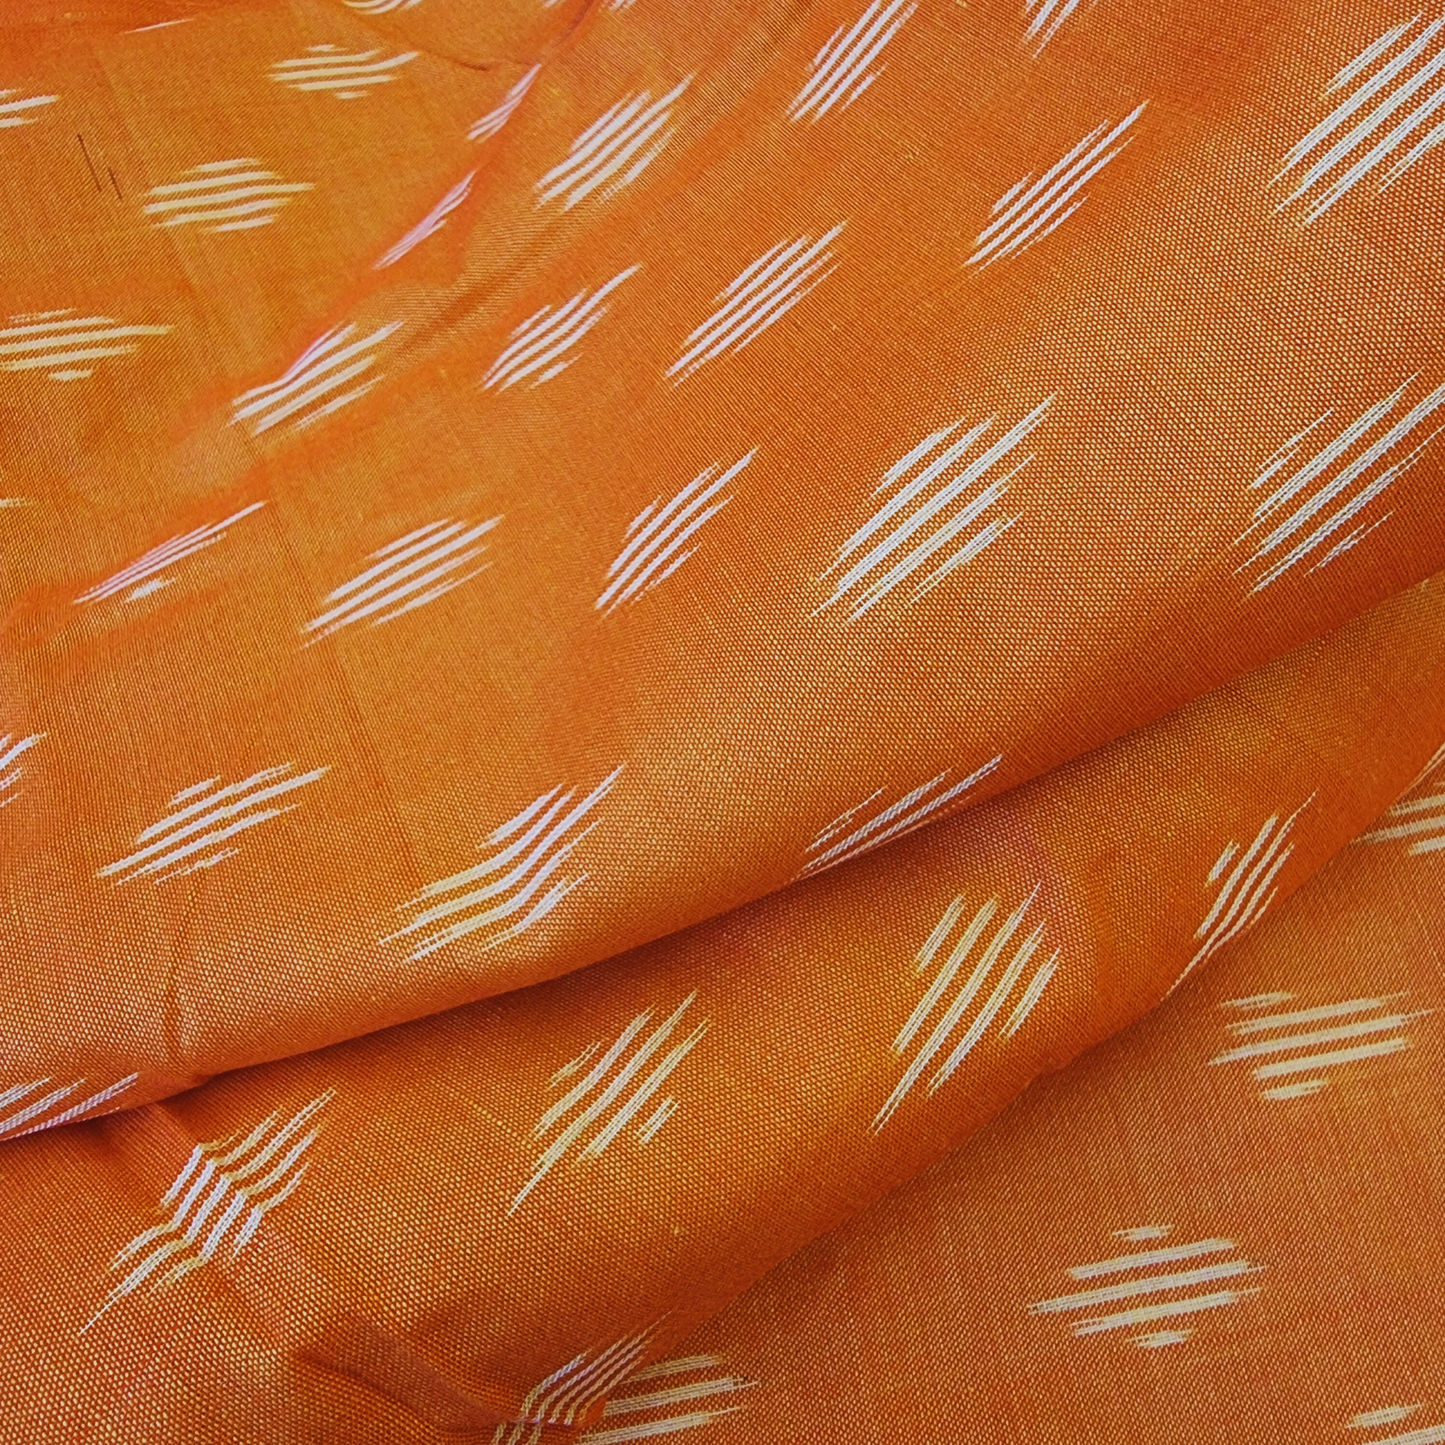 Indian Ikat Cotton Fabric